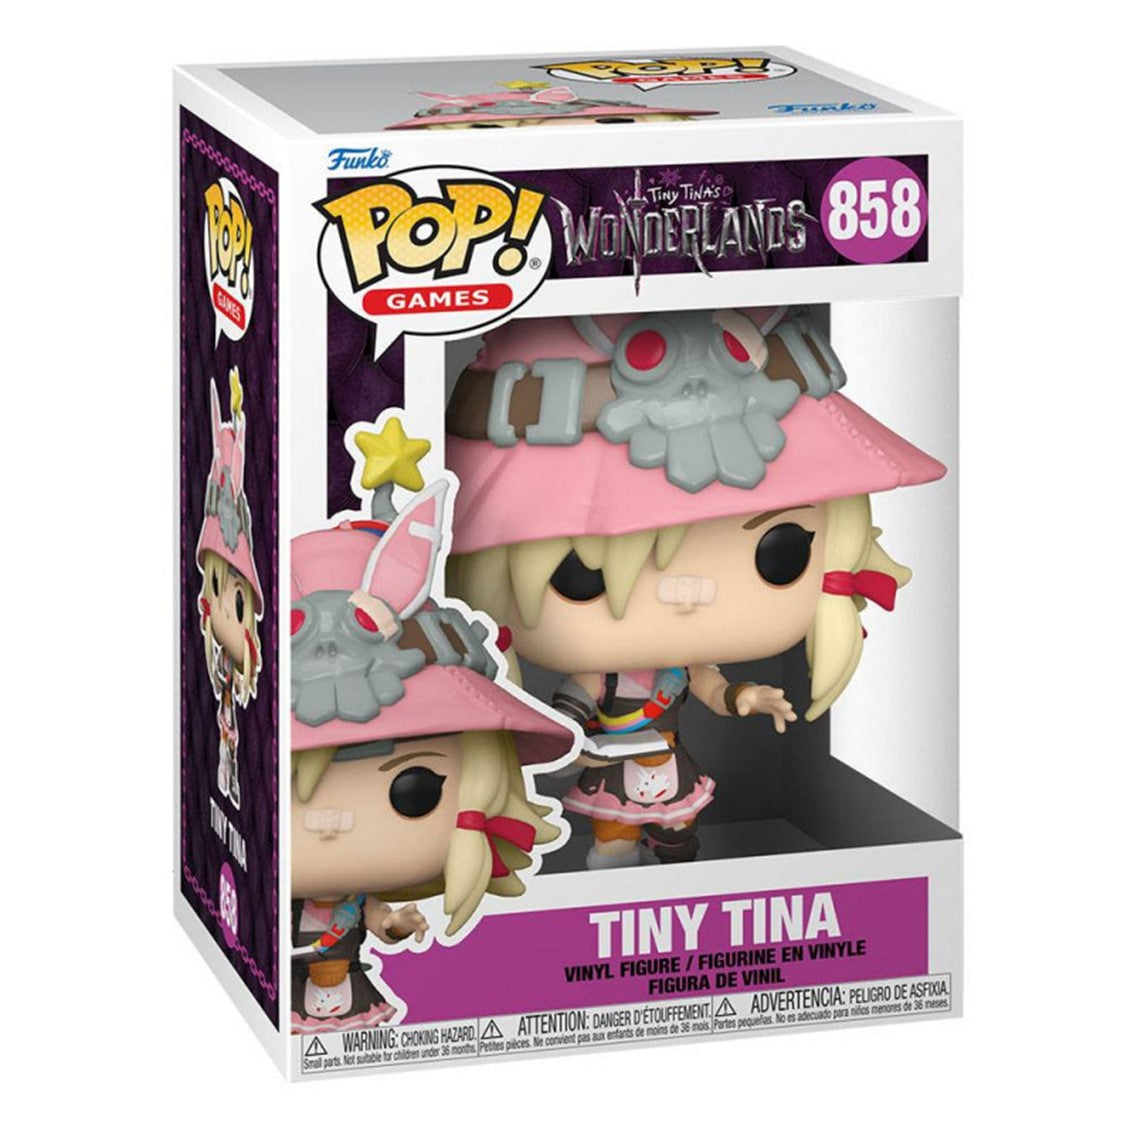 FUNKO POP! Tiny Tina's Wonderlands - Tiny Tina 858